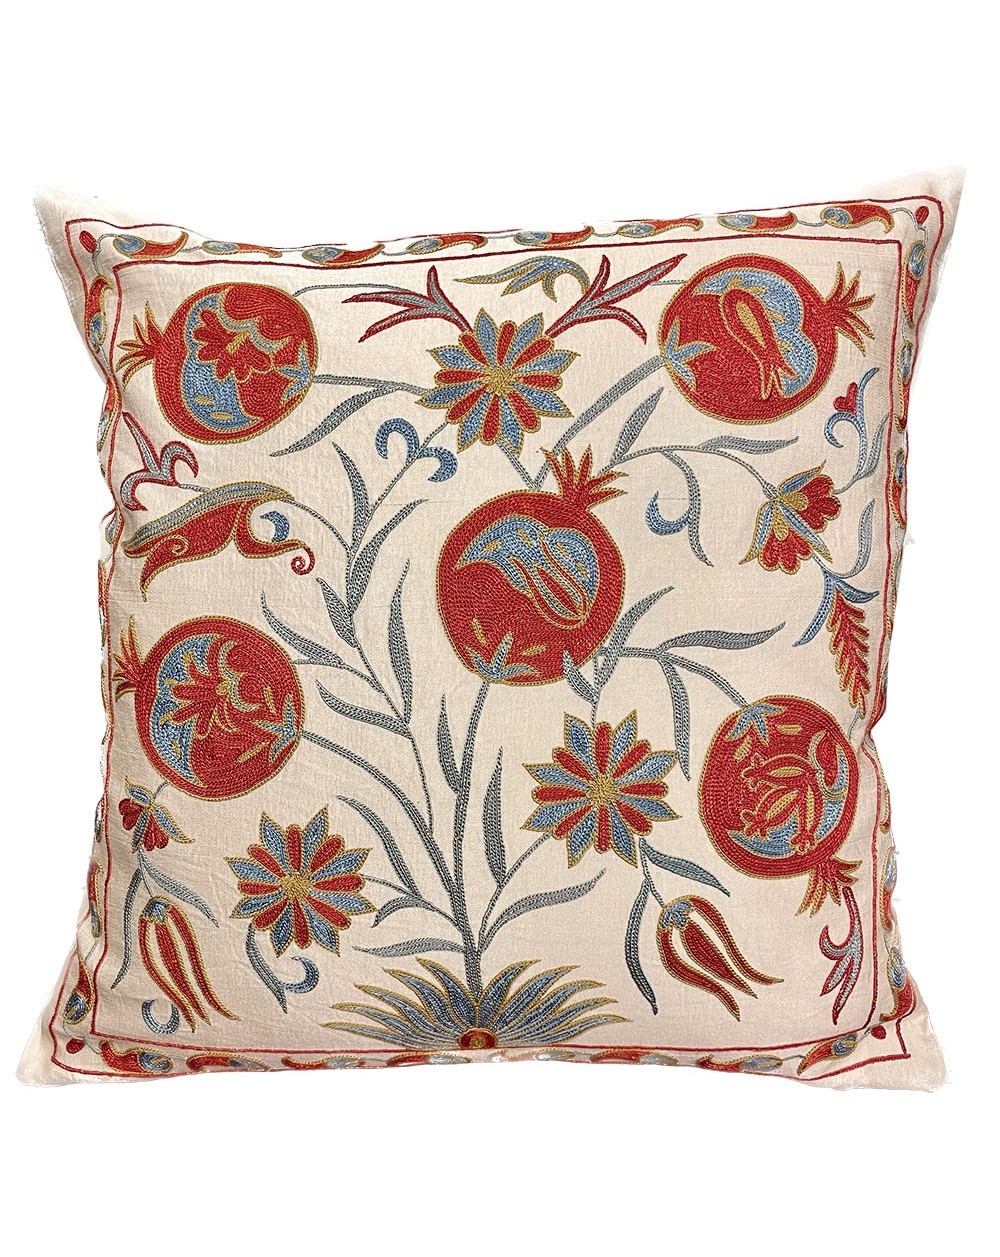 Ottoman Suzani cushion